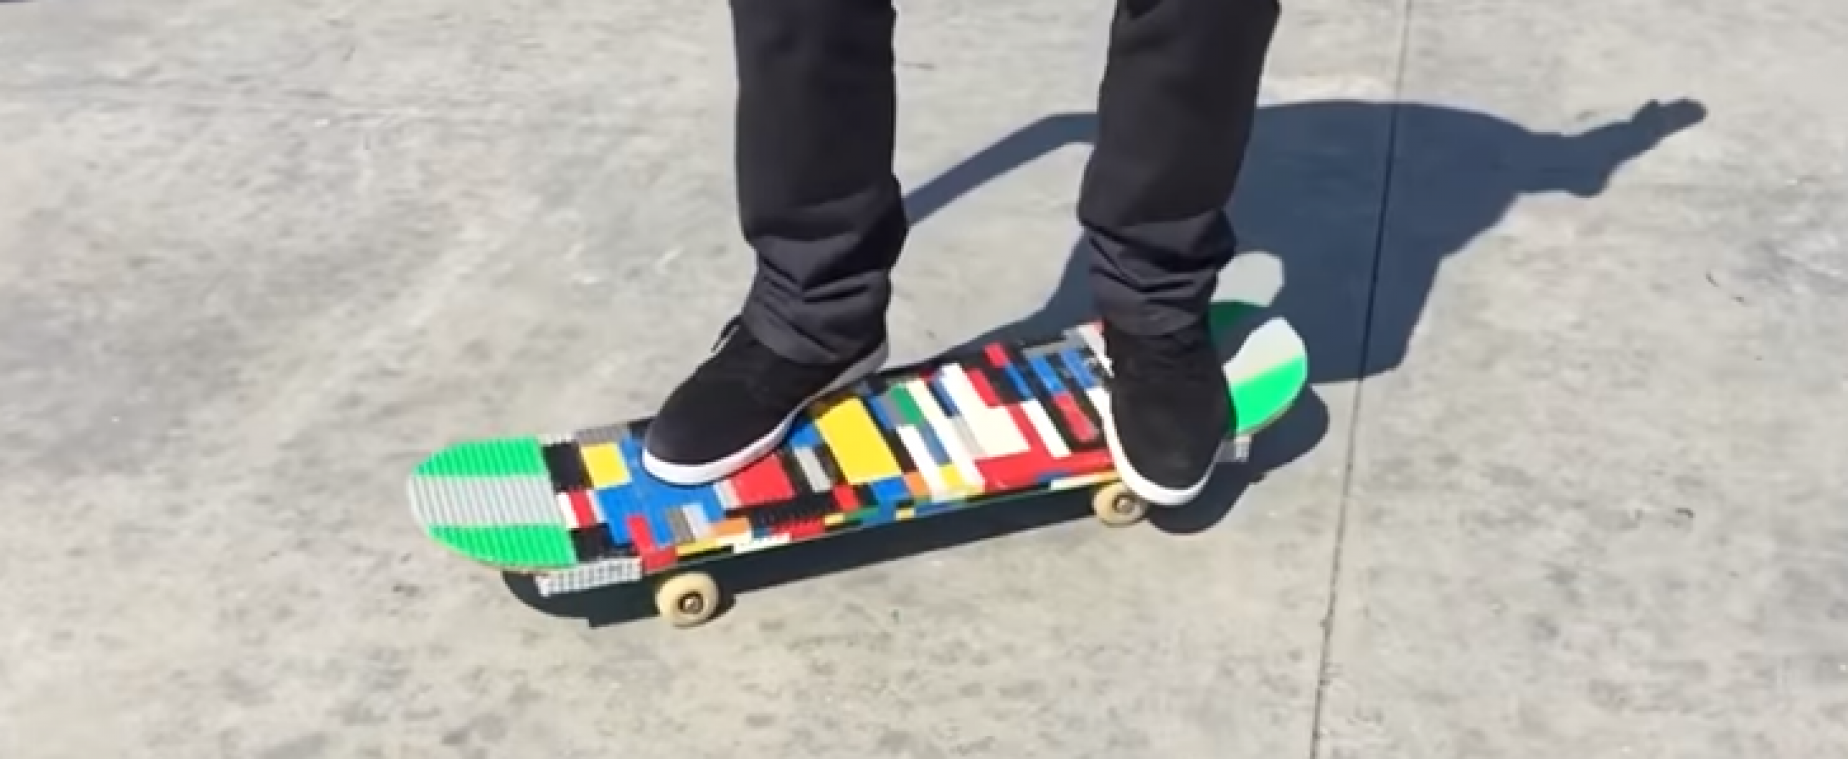 Kan je skaten op een skateboard van Lego?